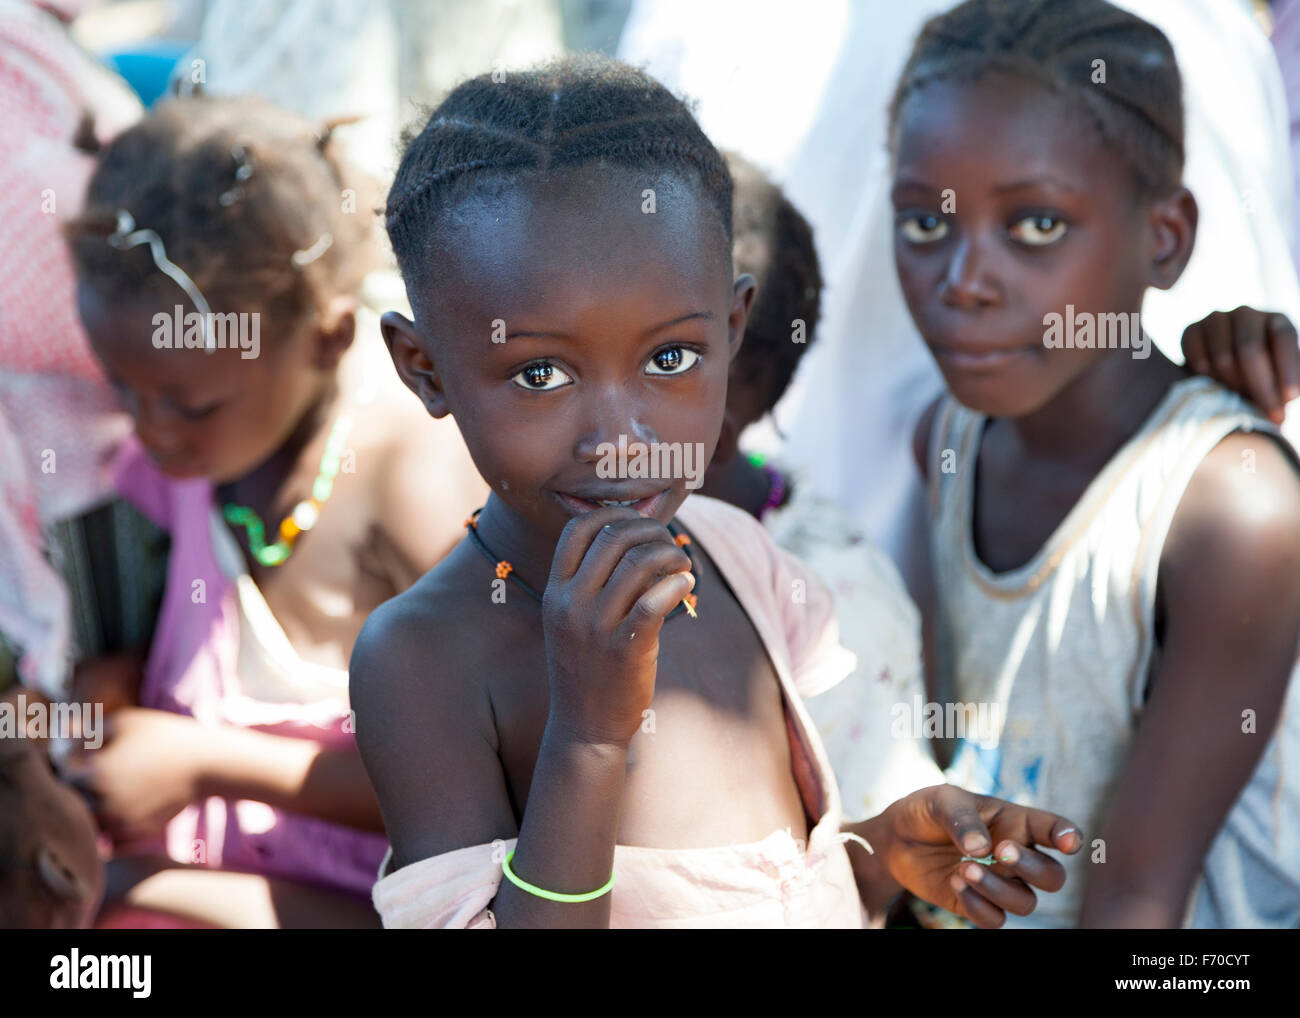 Ritratto su un bambino africano di etnia fula sorridente alla fotocamera, la revisione di vita quotidiana della gente locale nelle zone rurali DI GUINEA-BISSAU Foto Stock